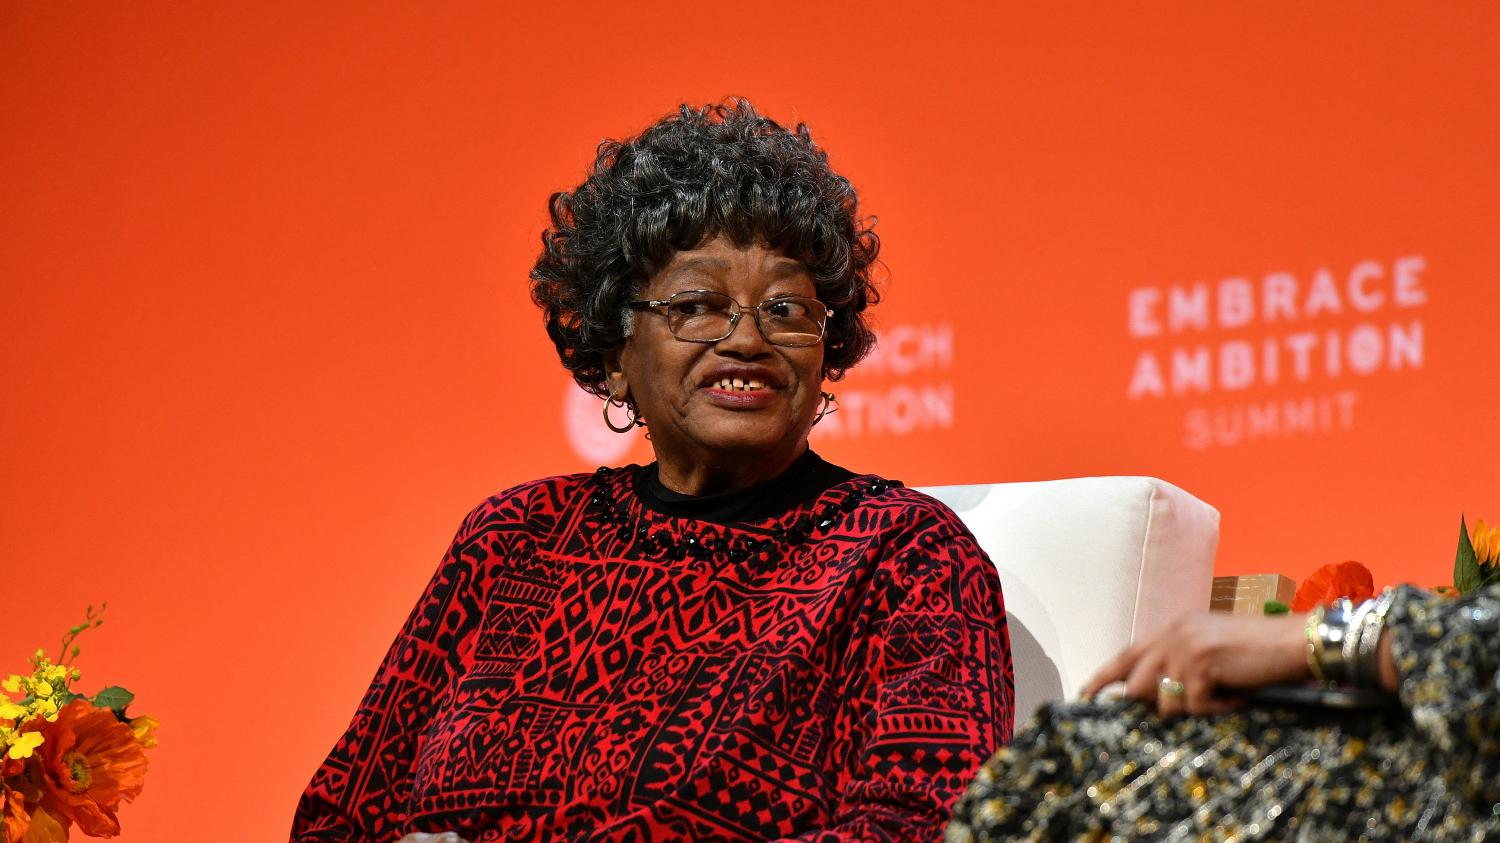 Claudette Colvin, première femme noire à avoir refusé de laisser sa place dans un bus aux Etats-Unis